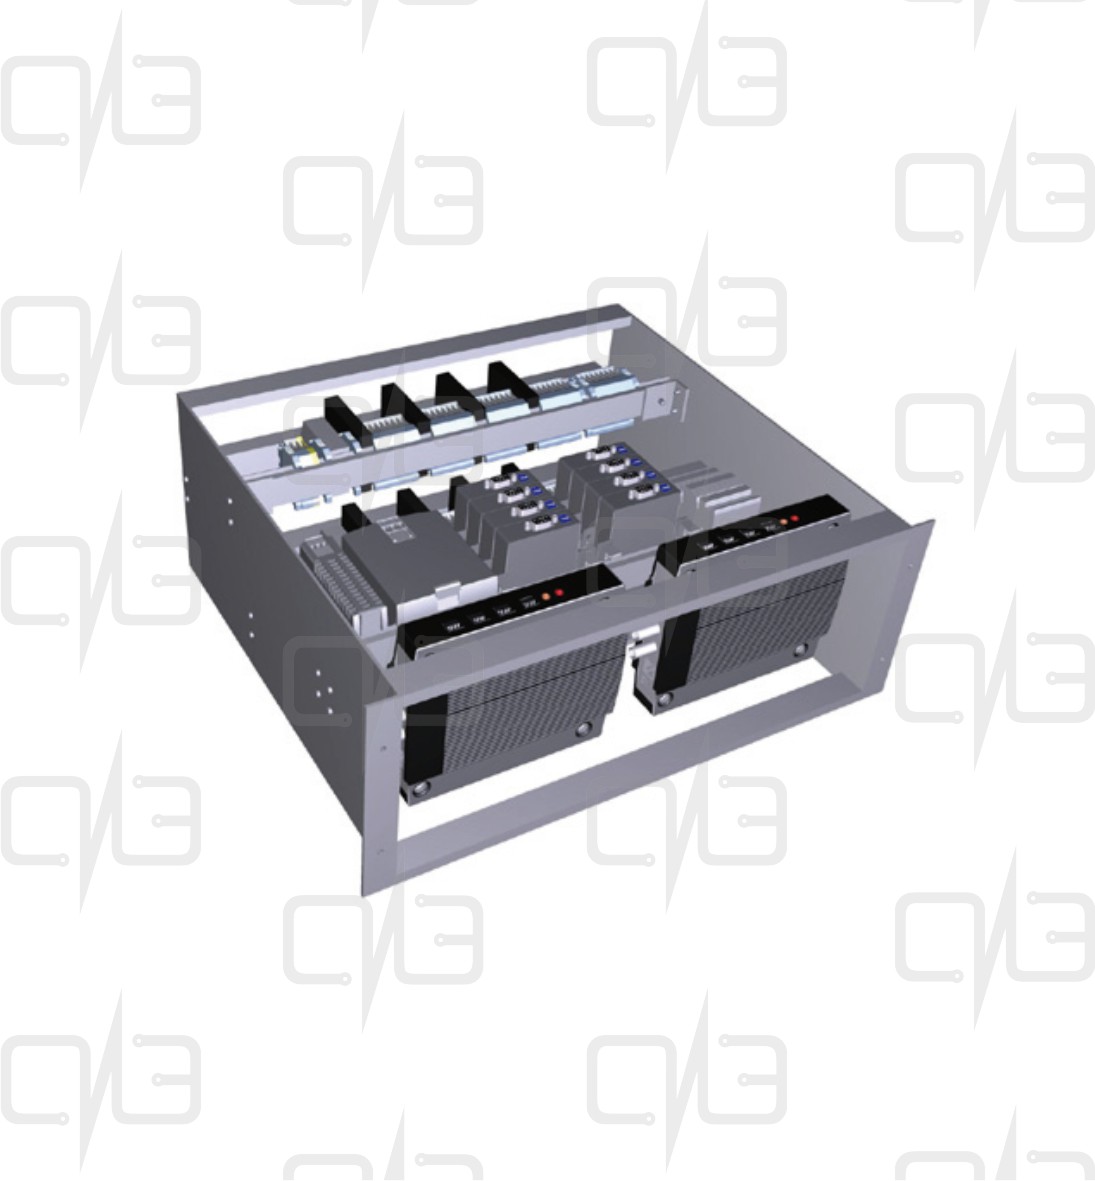 T05-Q2-00-001 Connection Rack - Q2 Видеосервер с источником питания и точкой доступа Ethernet